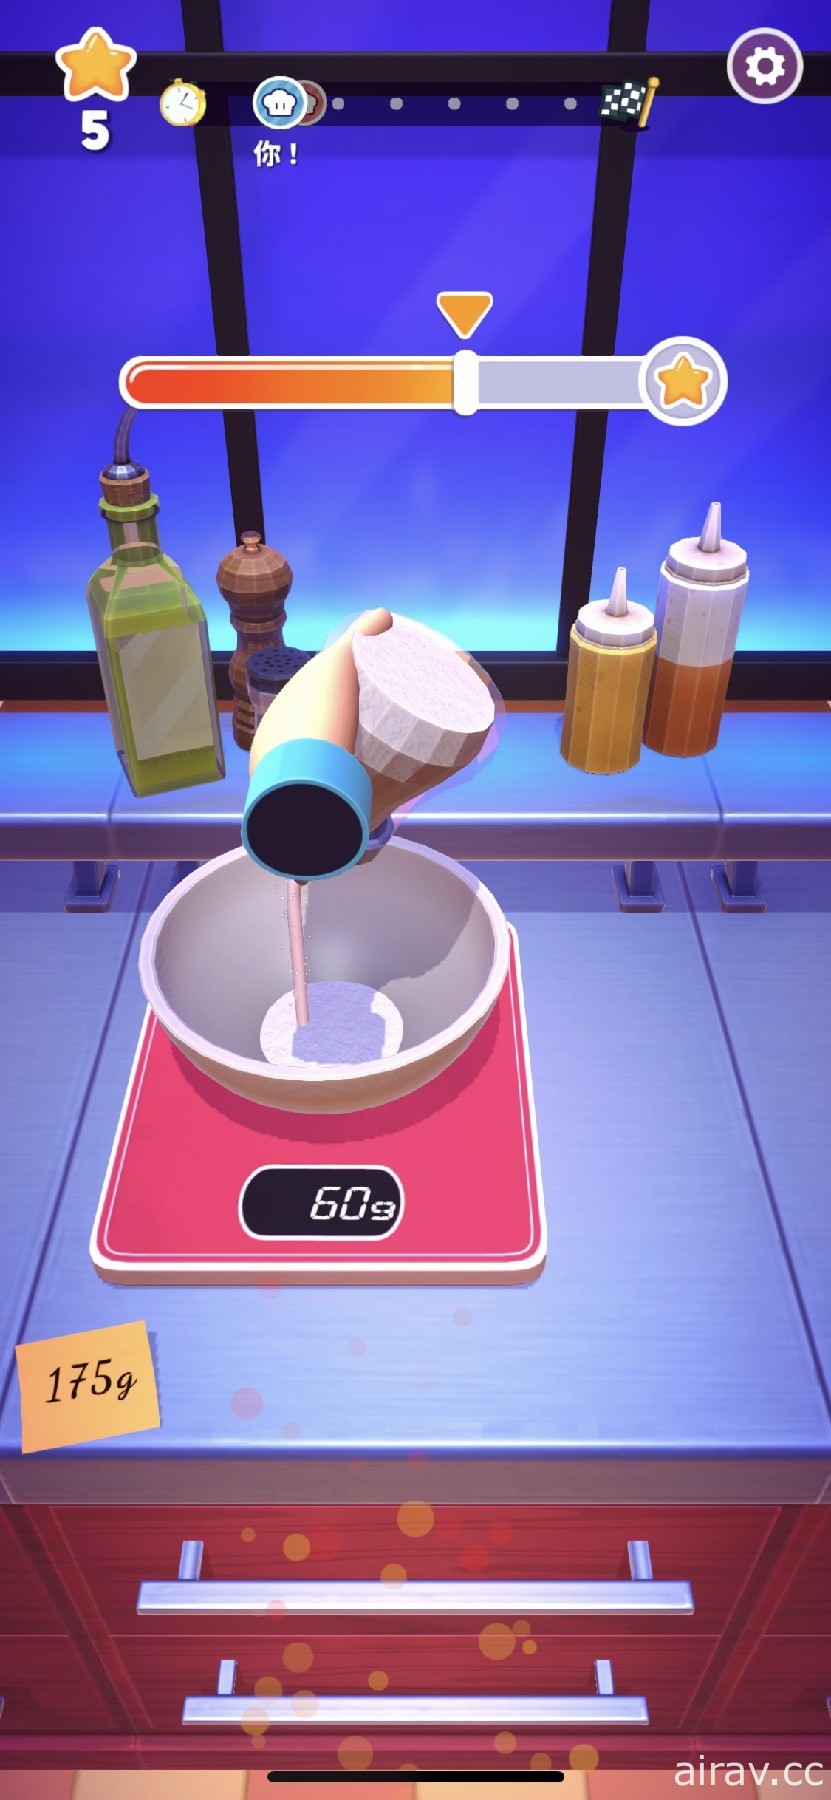 趣味烹飪競賽遊戲《MasterChef: Let’s Cook》於 Apple Arcade 推出 展現廚藝的時刻到了